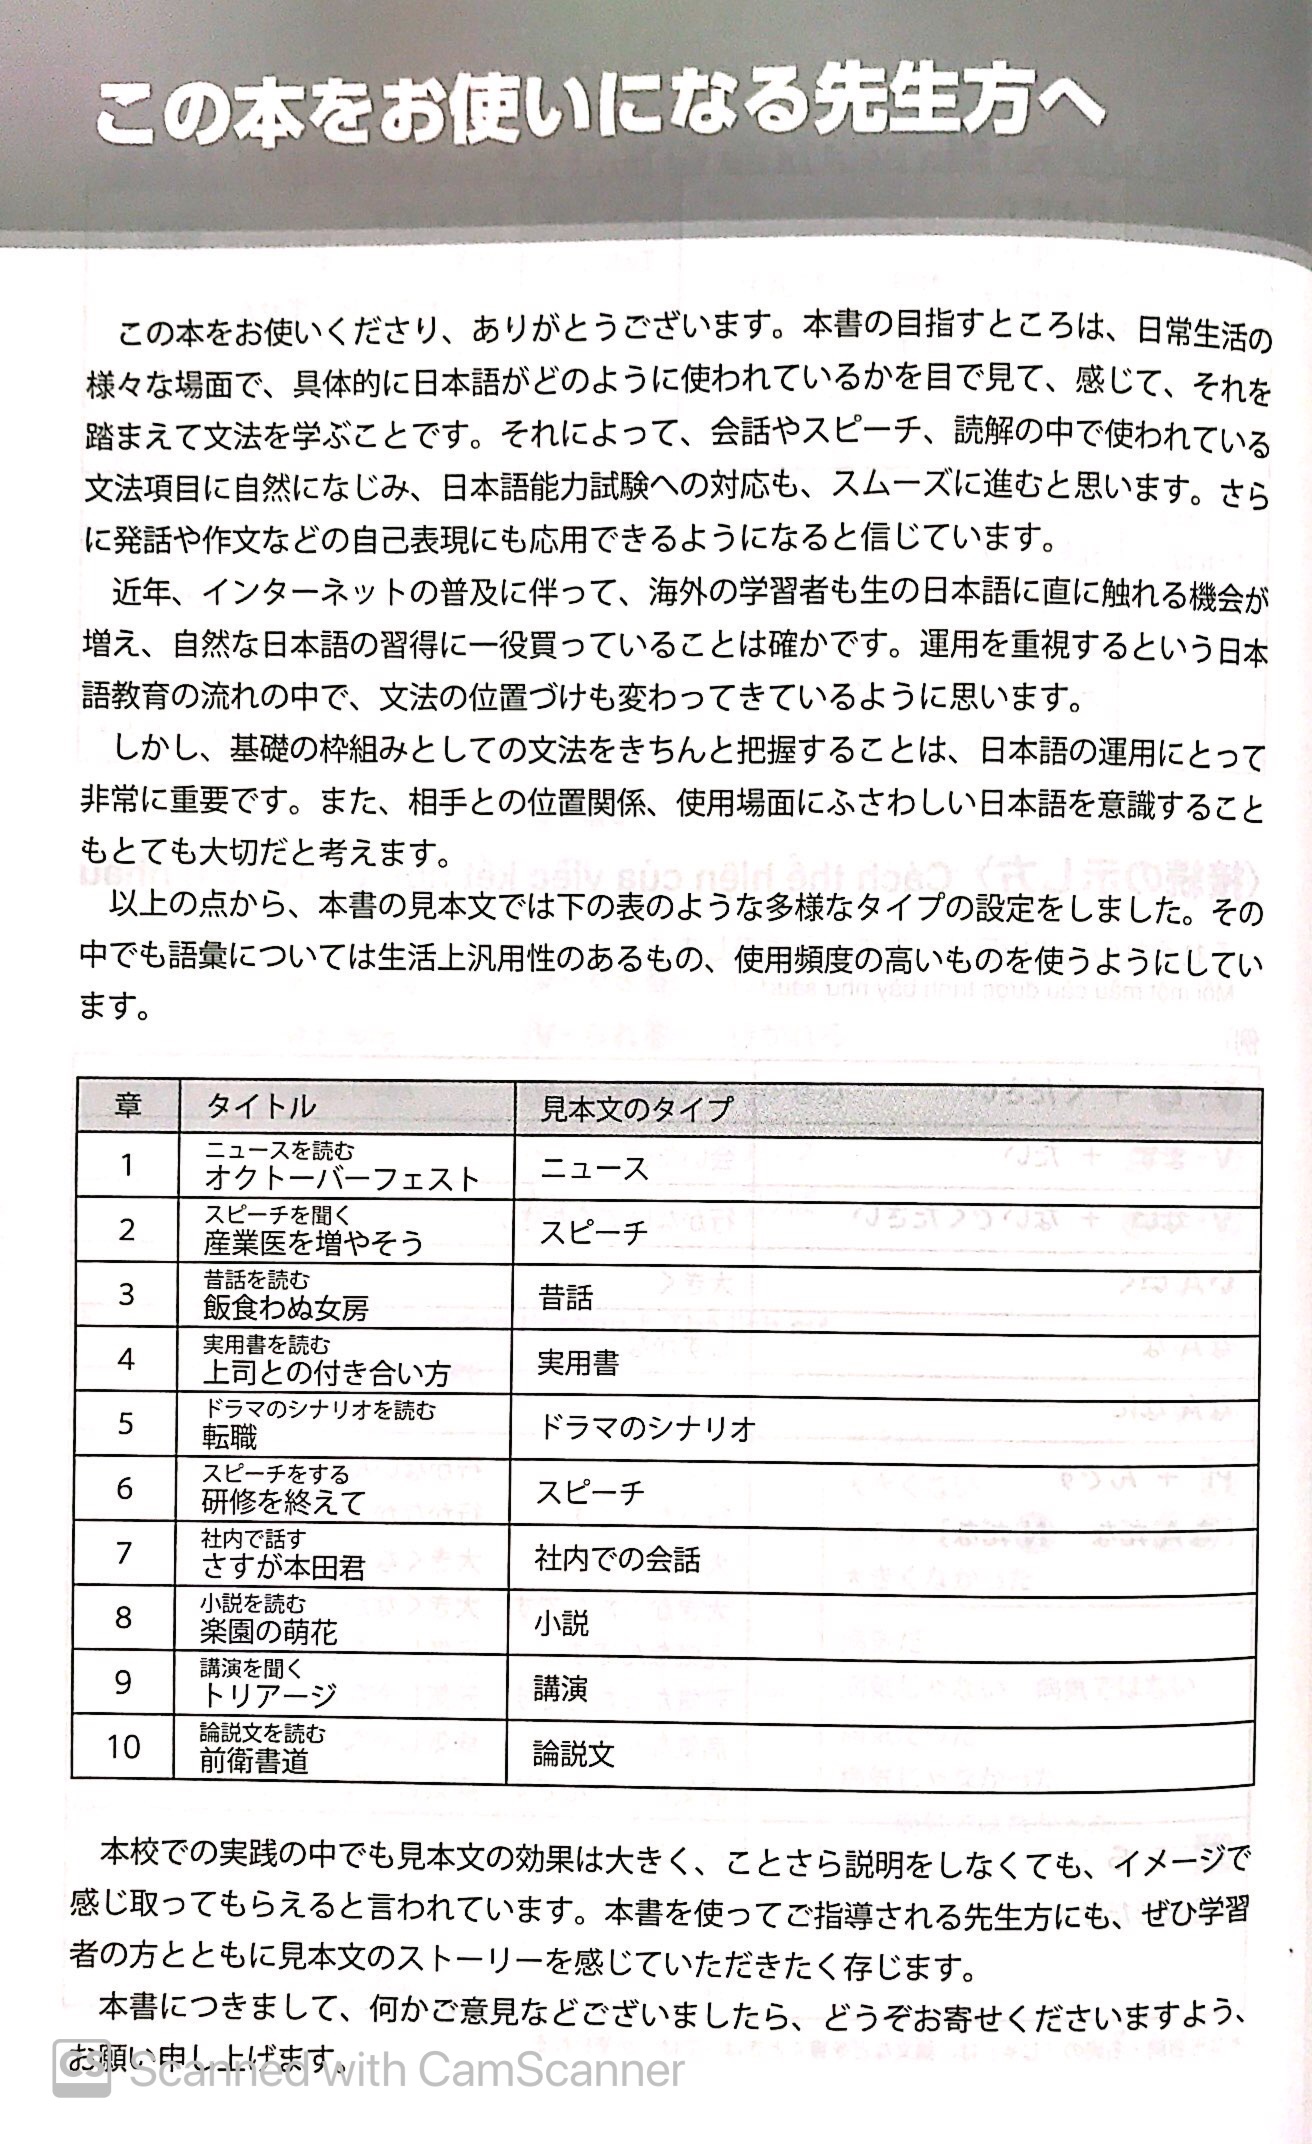 Giáo Trình Luyện Thi Năng Lực Tiếng Nhật Try! - N1 Kèm 1 CD PDF